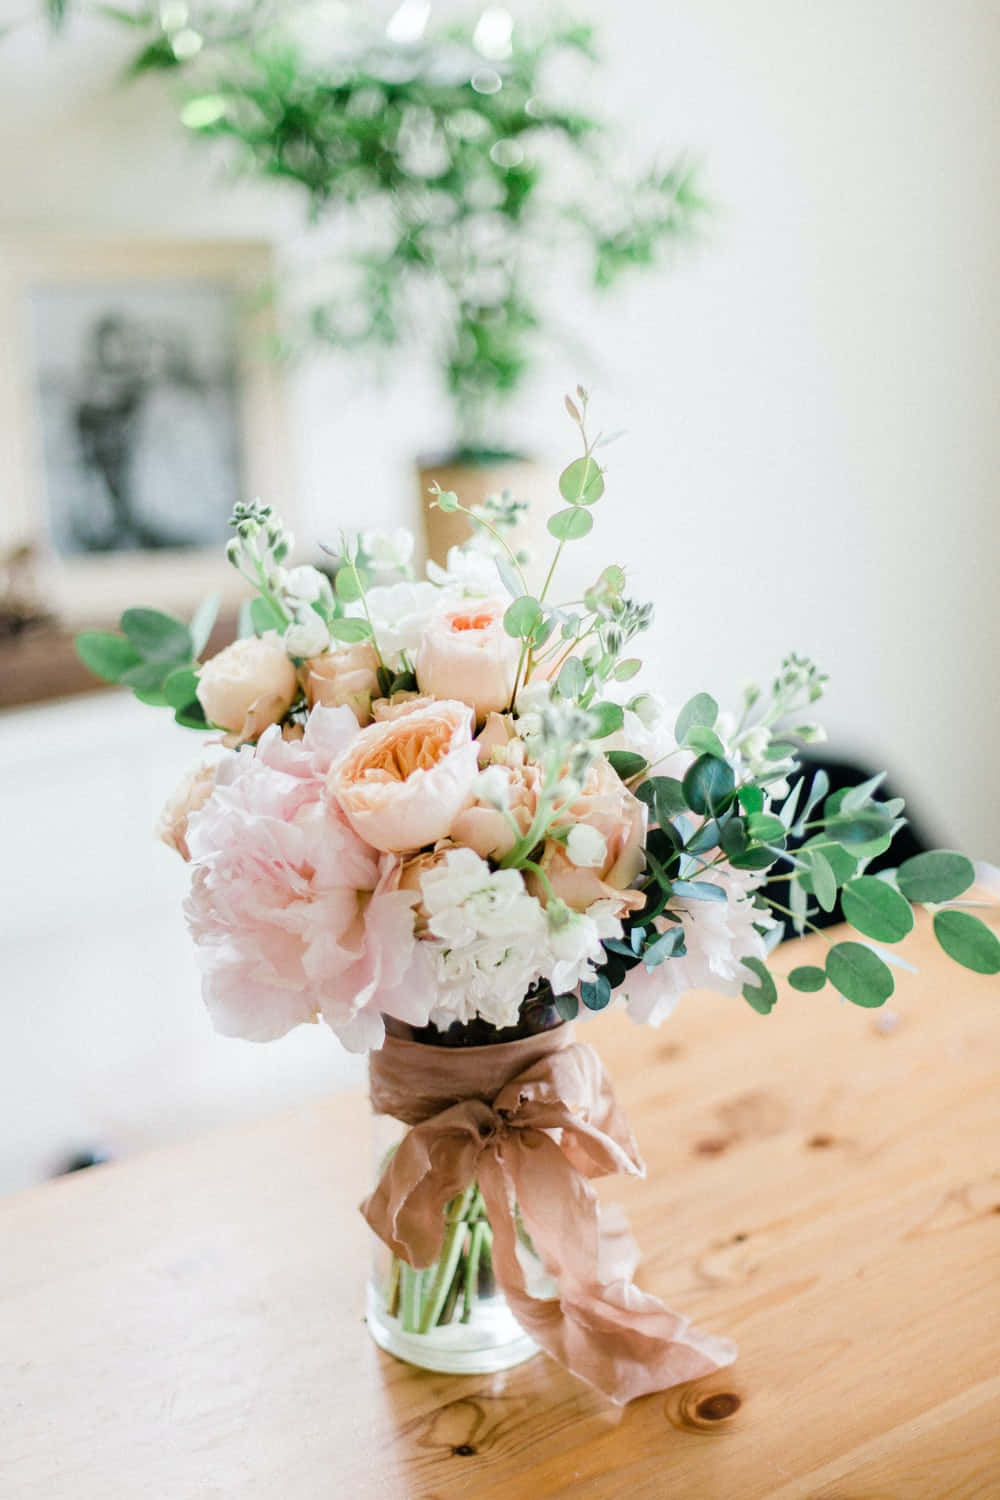 Caption: Elegant Floral Arrangement in a Vase Wallpaper